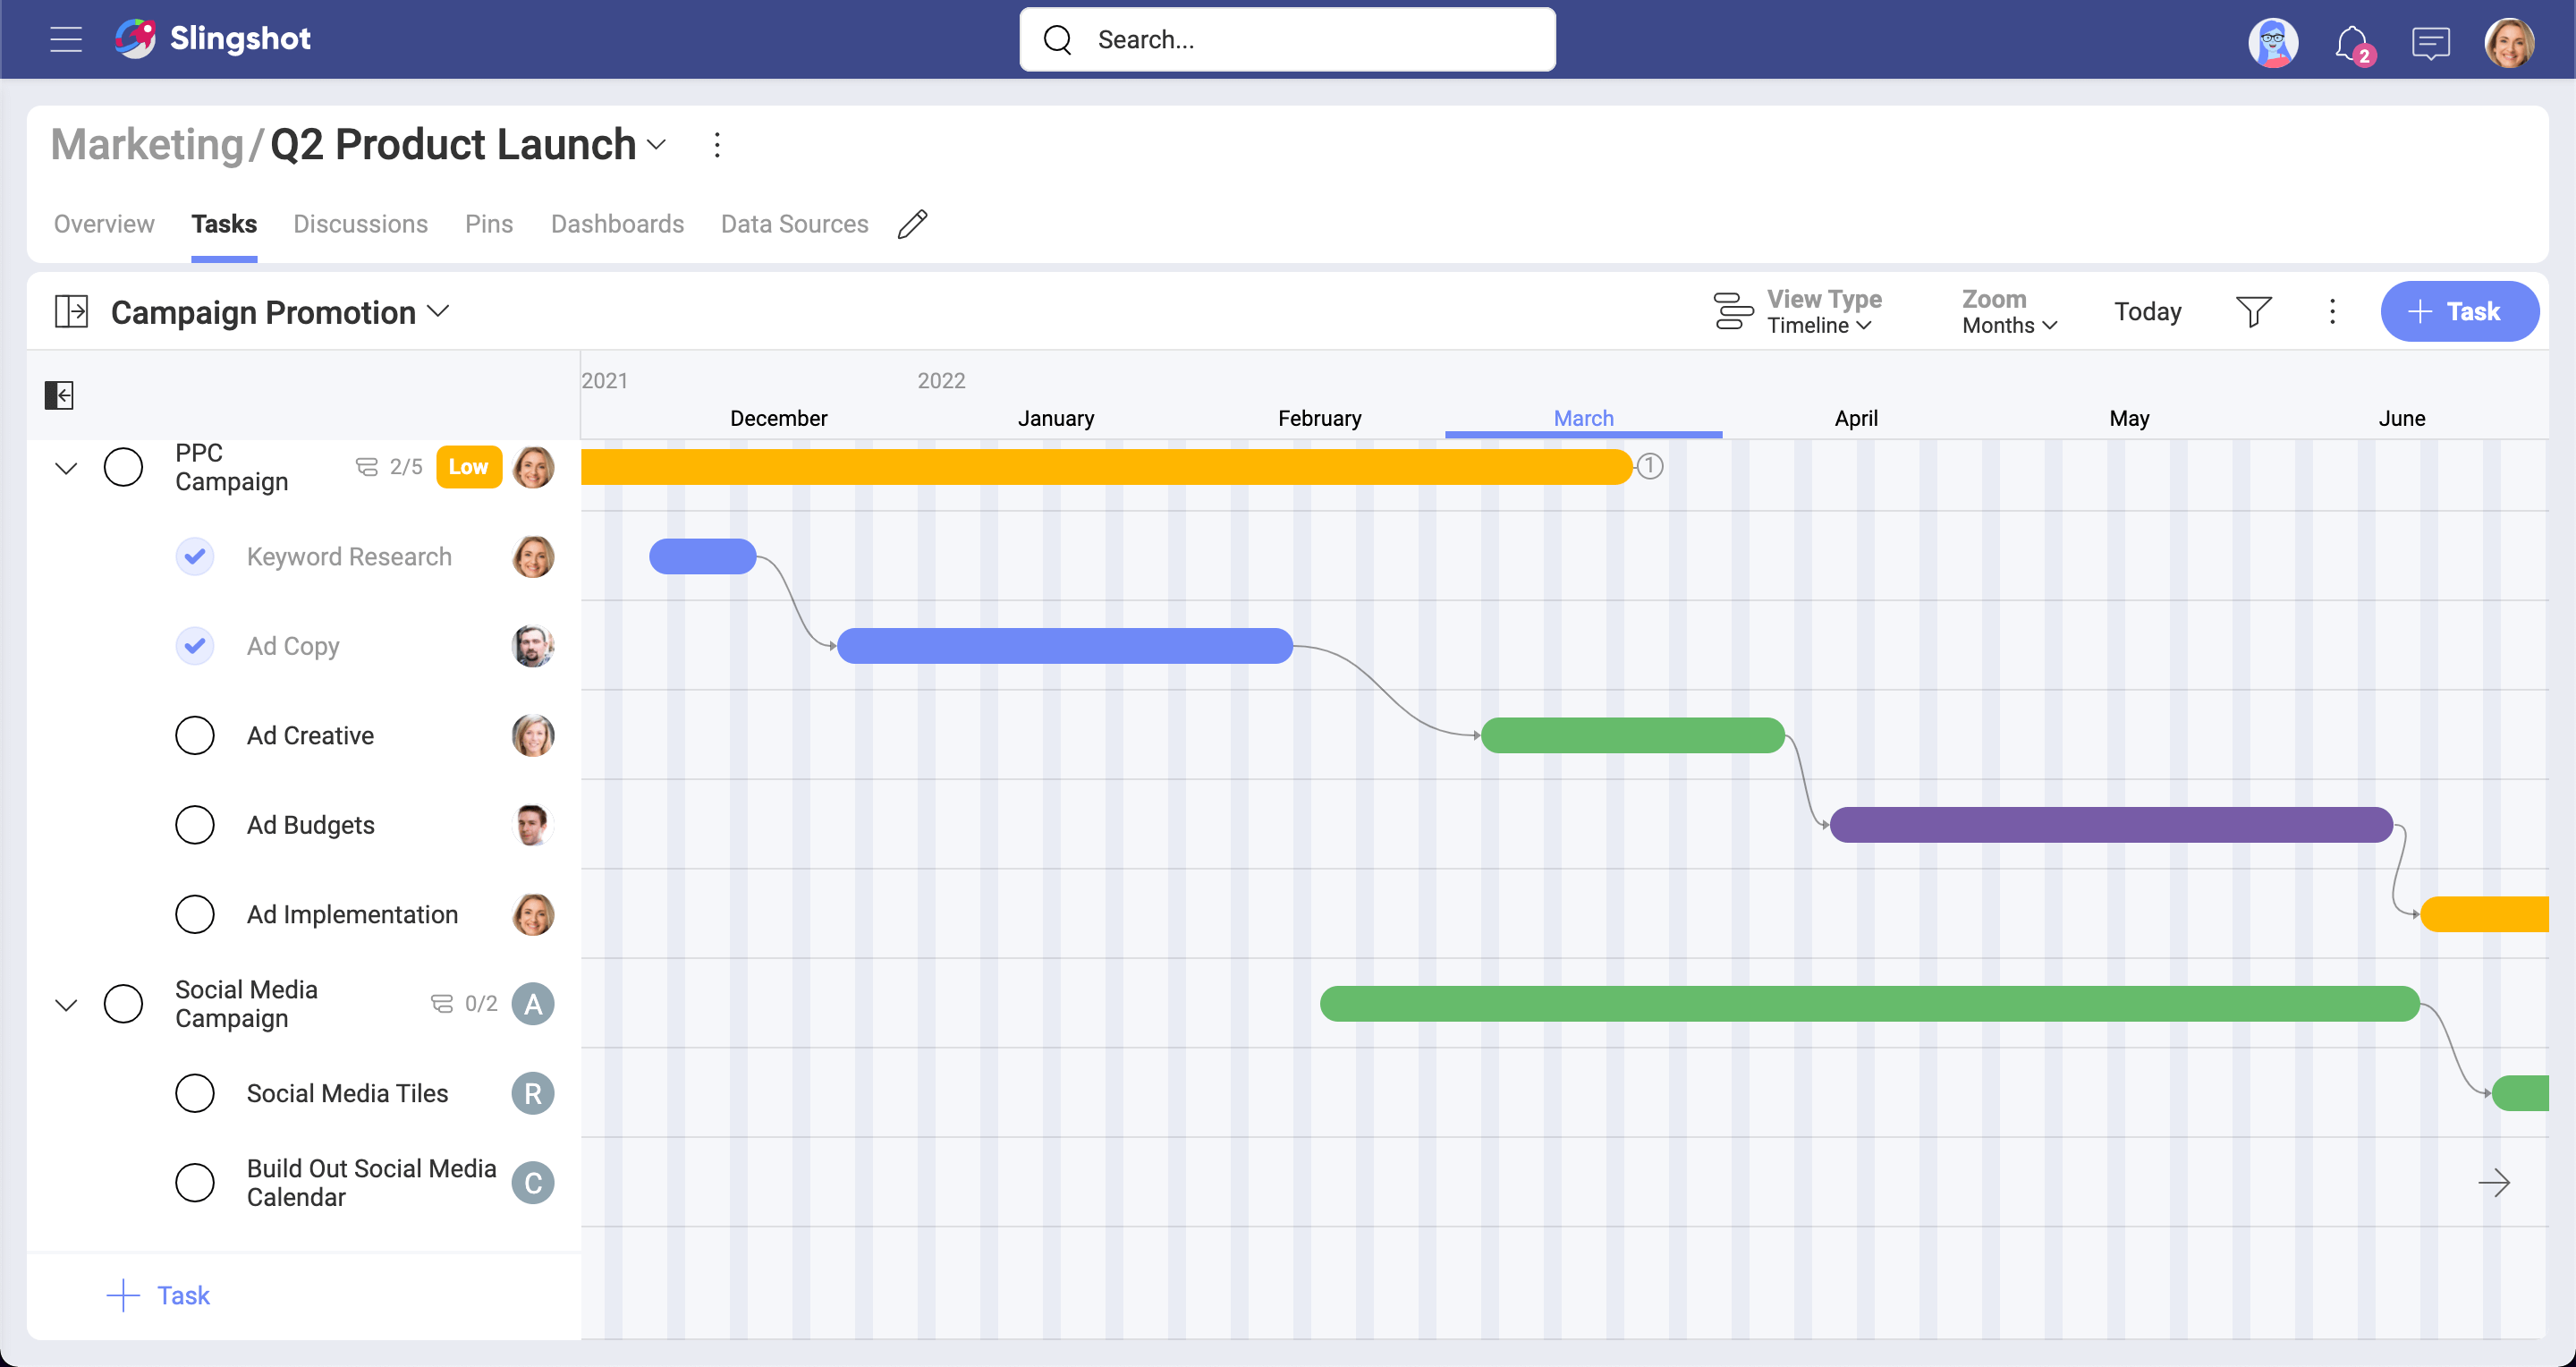 Showing the tasks' timeline